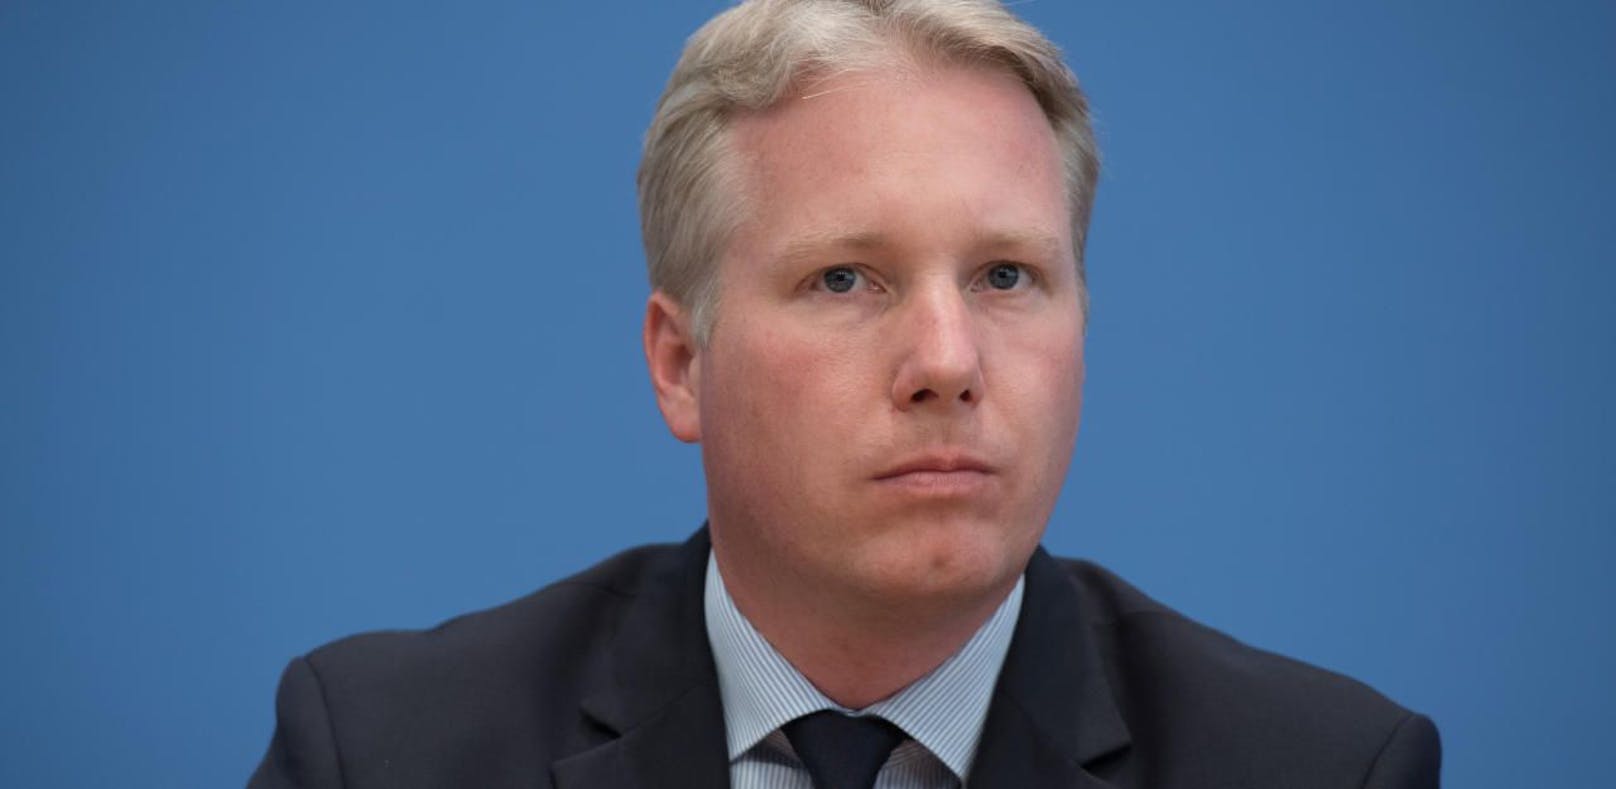 Der AfD-Politiker Jörg Nobis ist stinksauer.